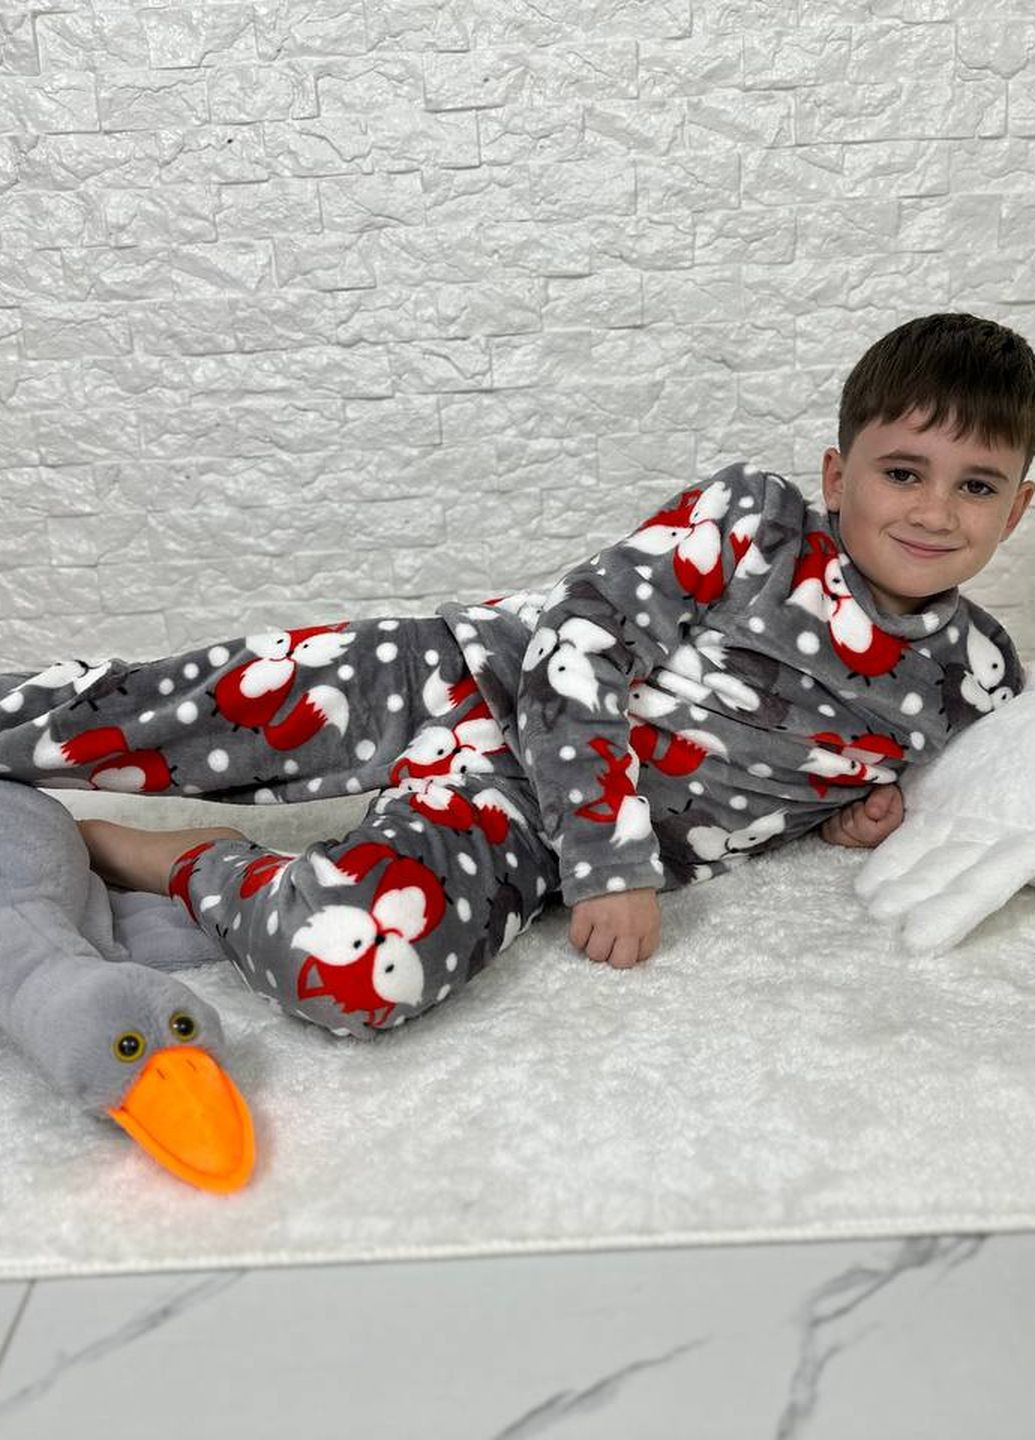 Серая детская пижама двойка цвет серый принт лисичка р.110/116 446905 New Trend